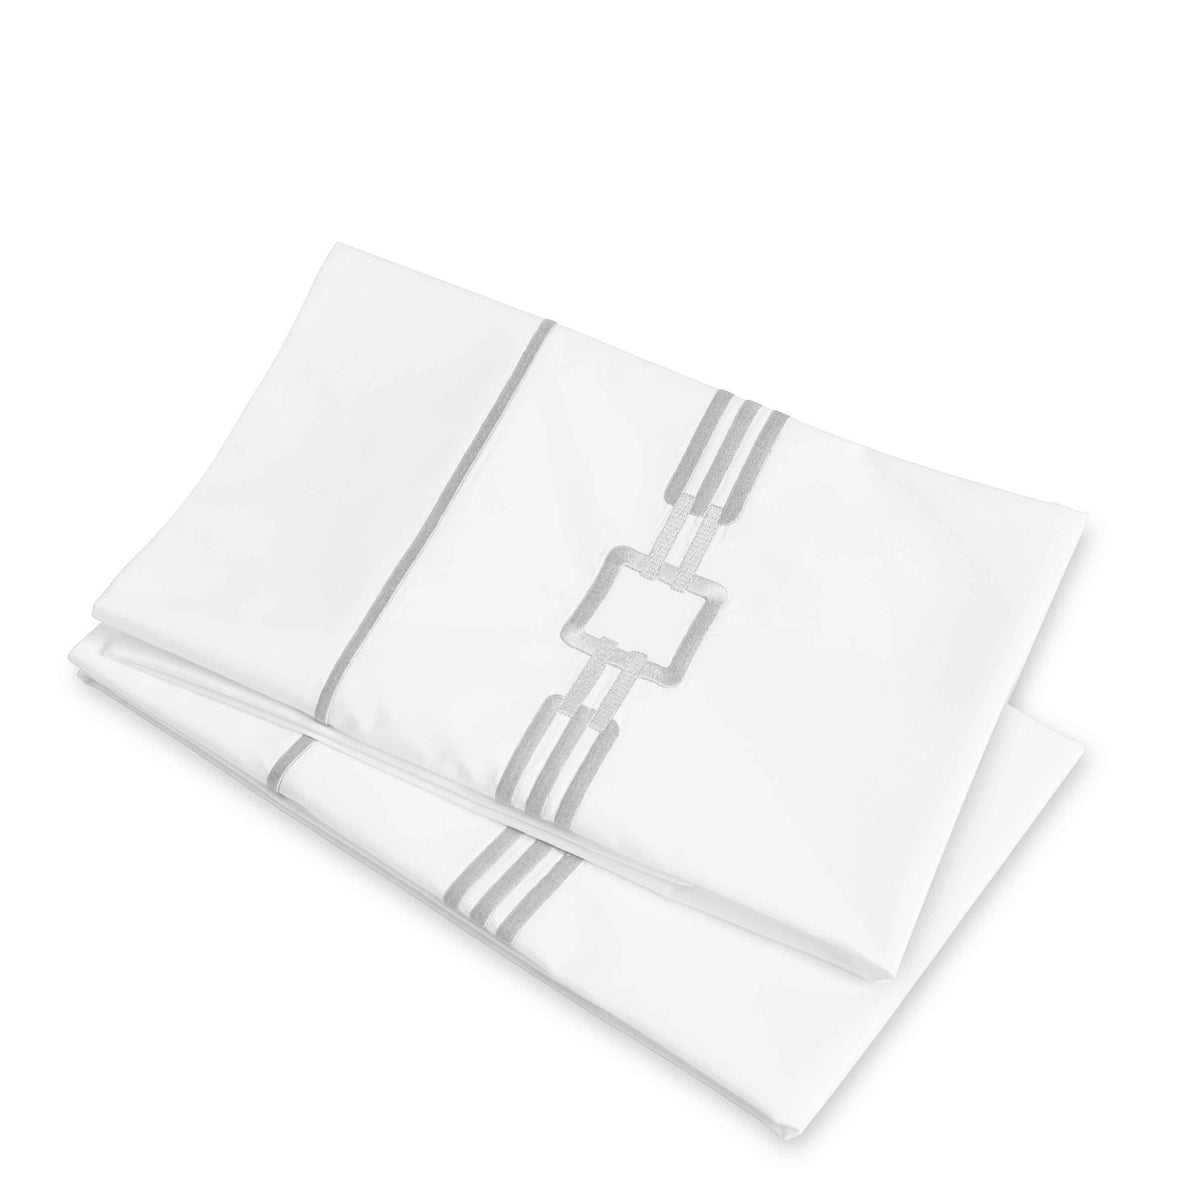 Clear Image of Signoria Retrò Pillowcases in White/Dark Pearl Color